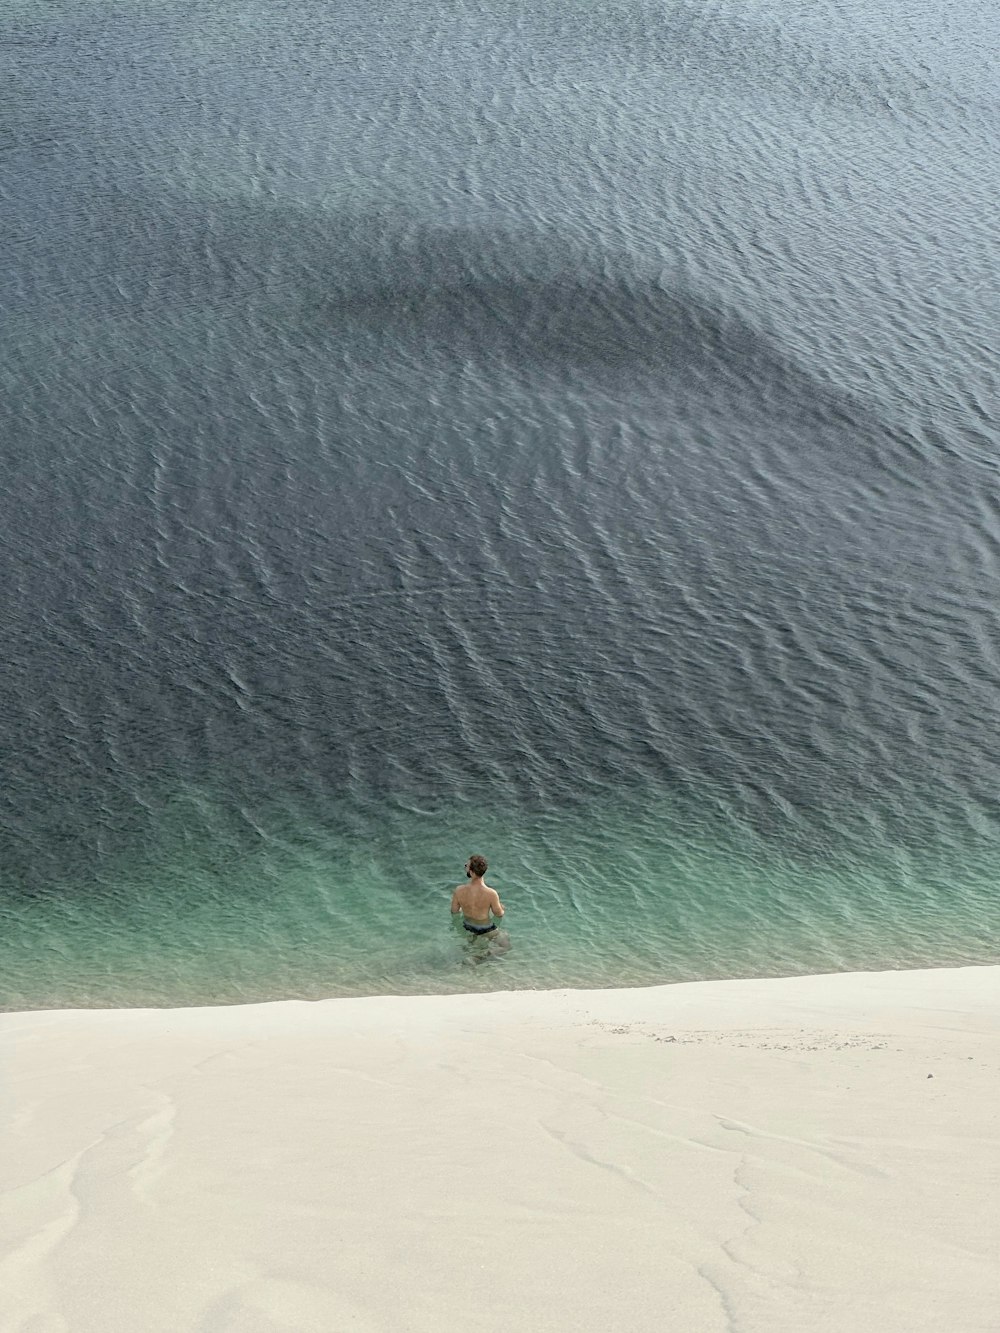 uma pessoa em um corpo de água em uma praia